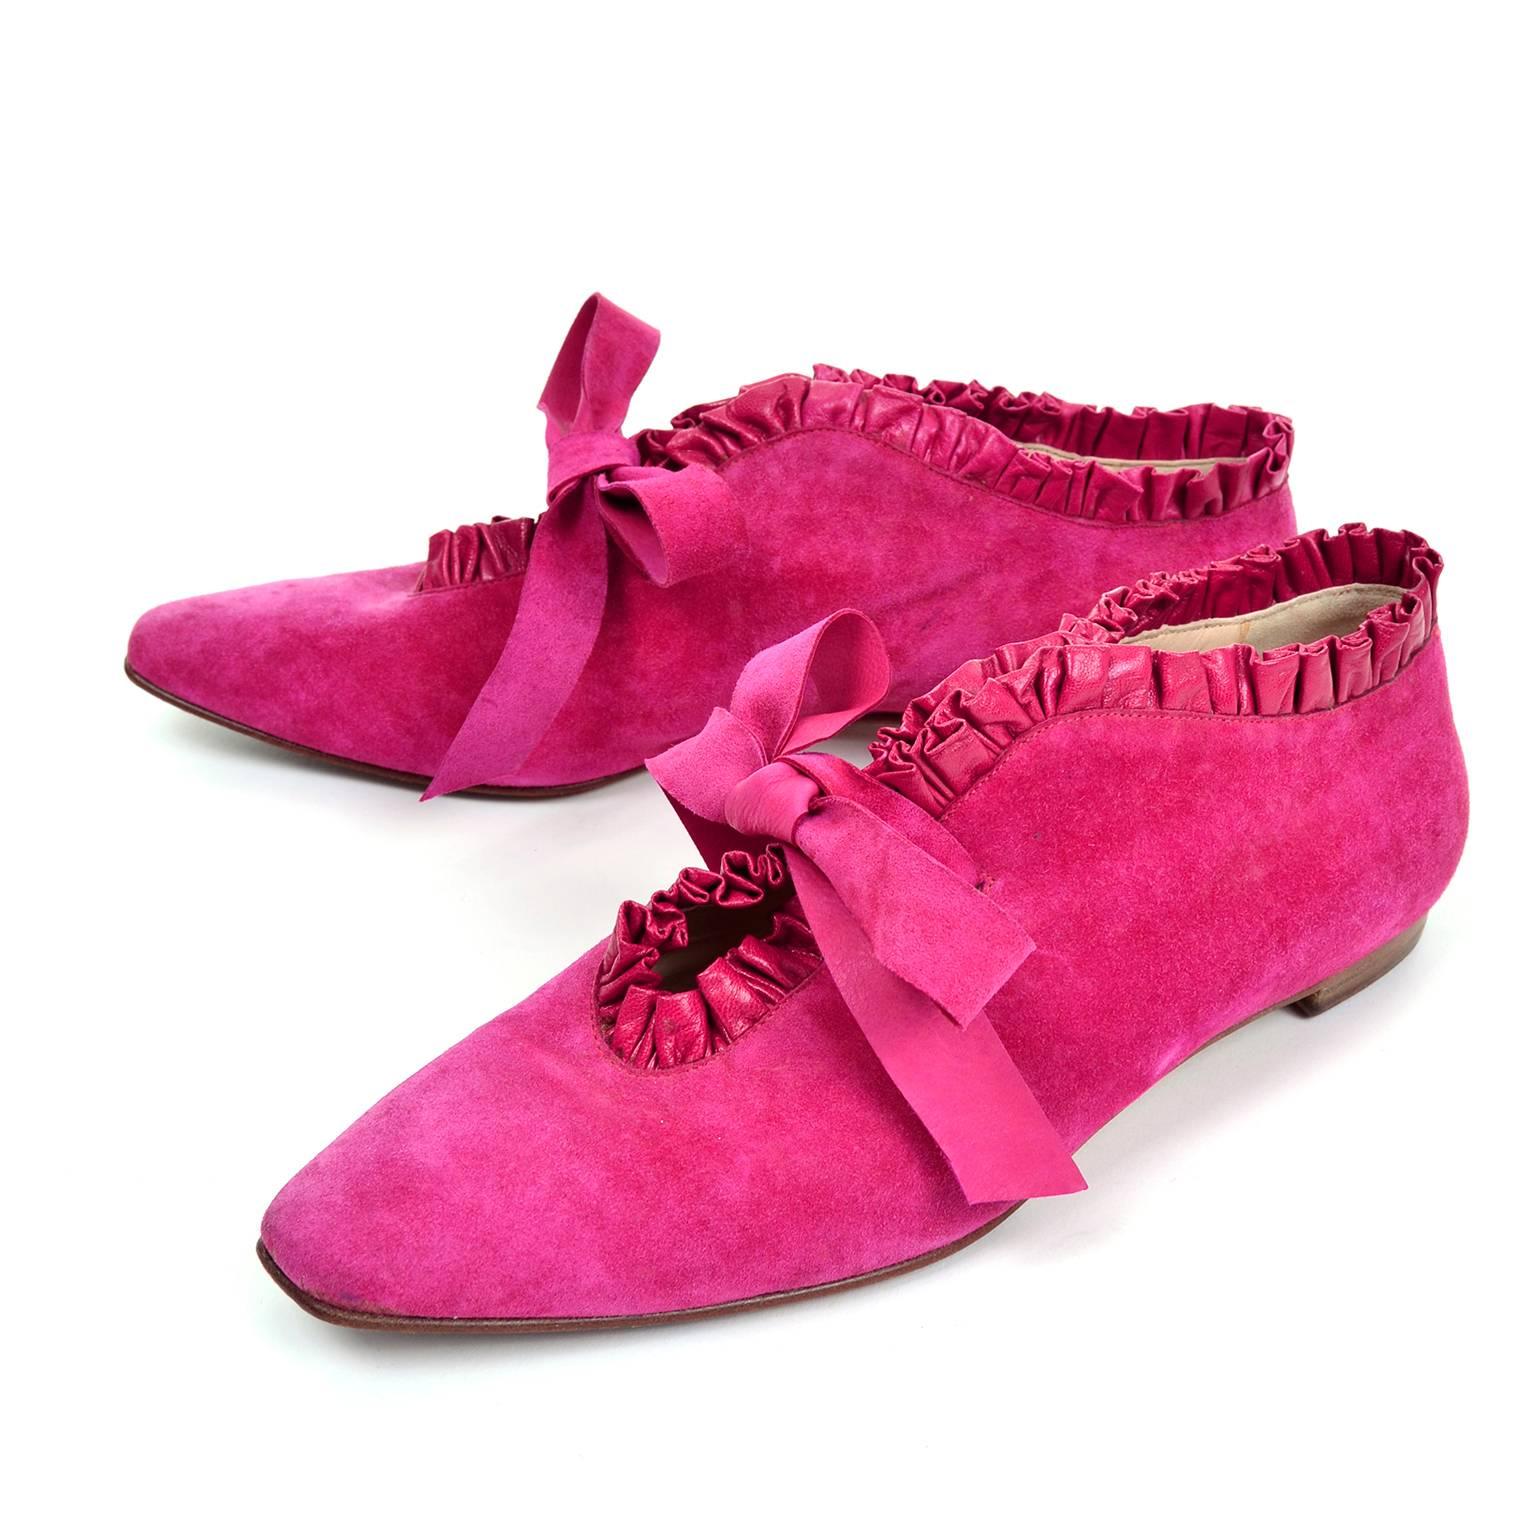 hot pink suede booties